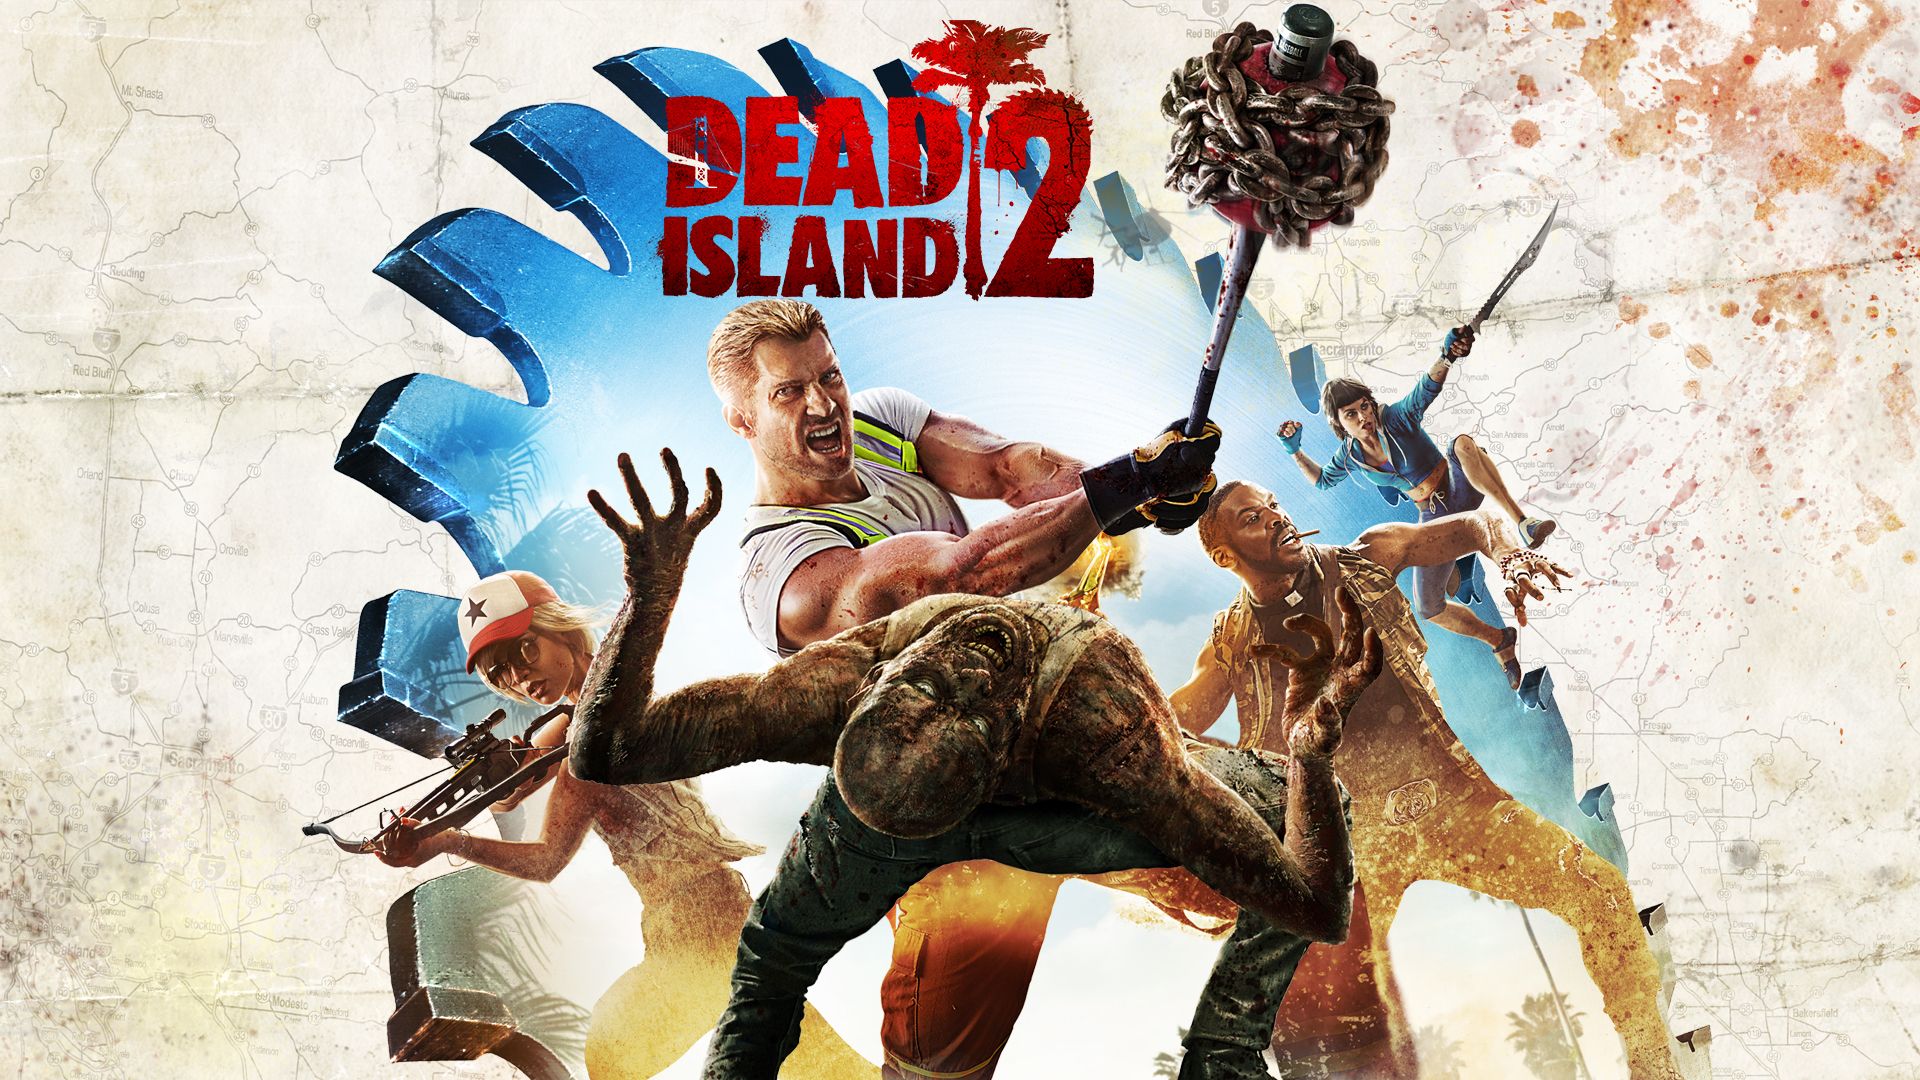 ข่าวลือ! Dead Island 2 อาจจะวางจำหน่ายในเดือนกันยายนหรือตุลาคมนี้